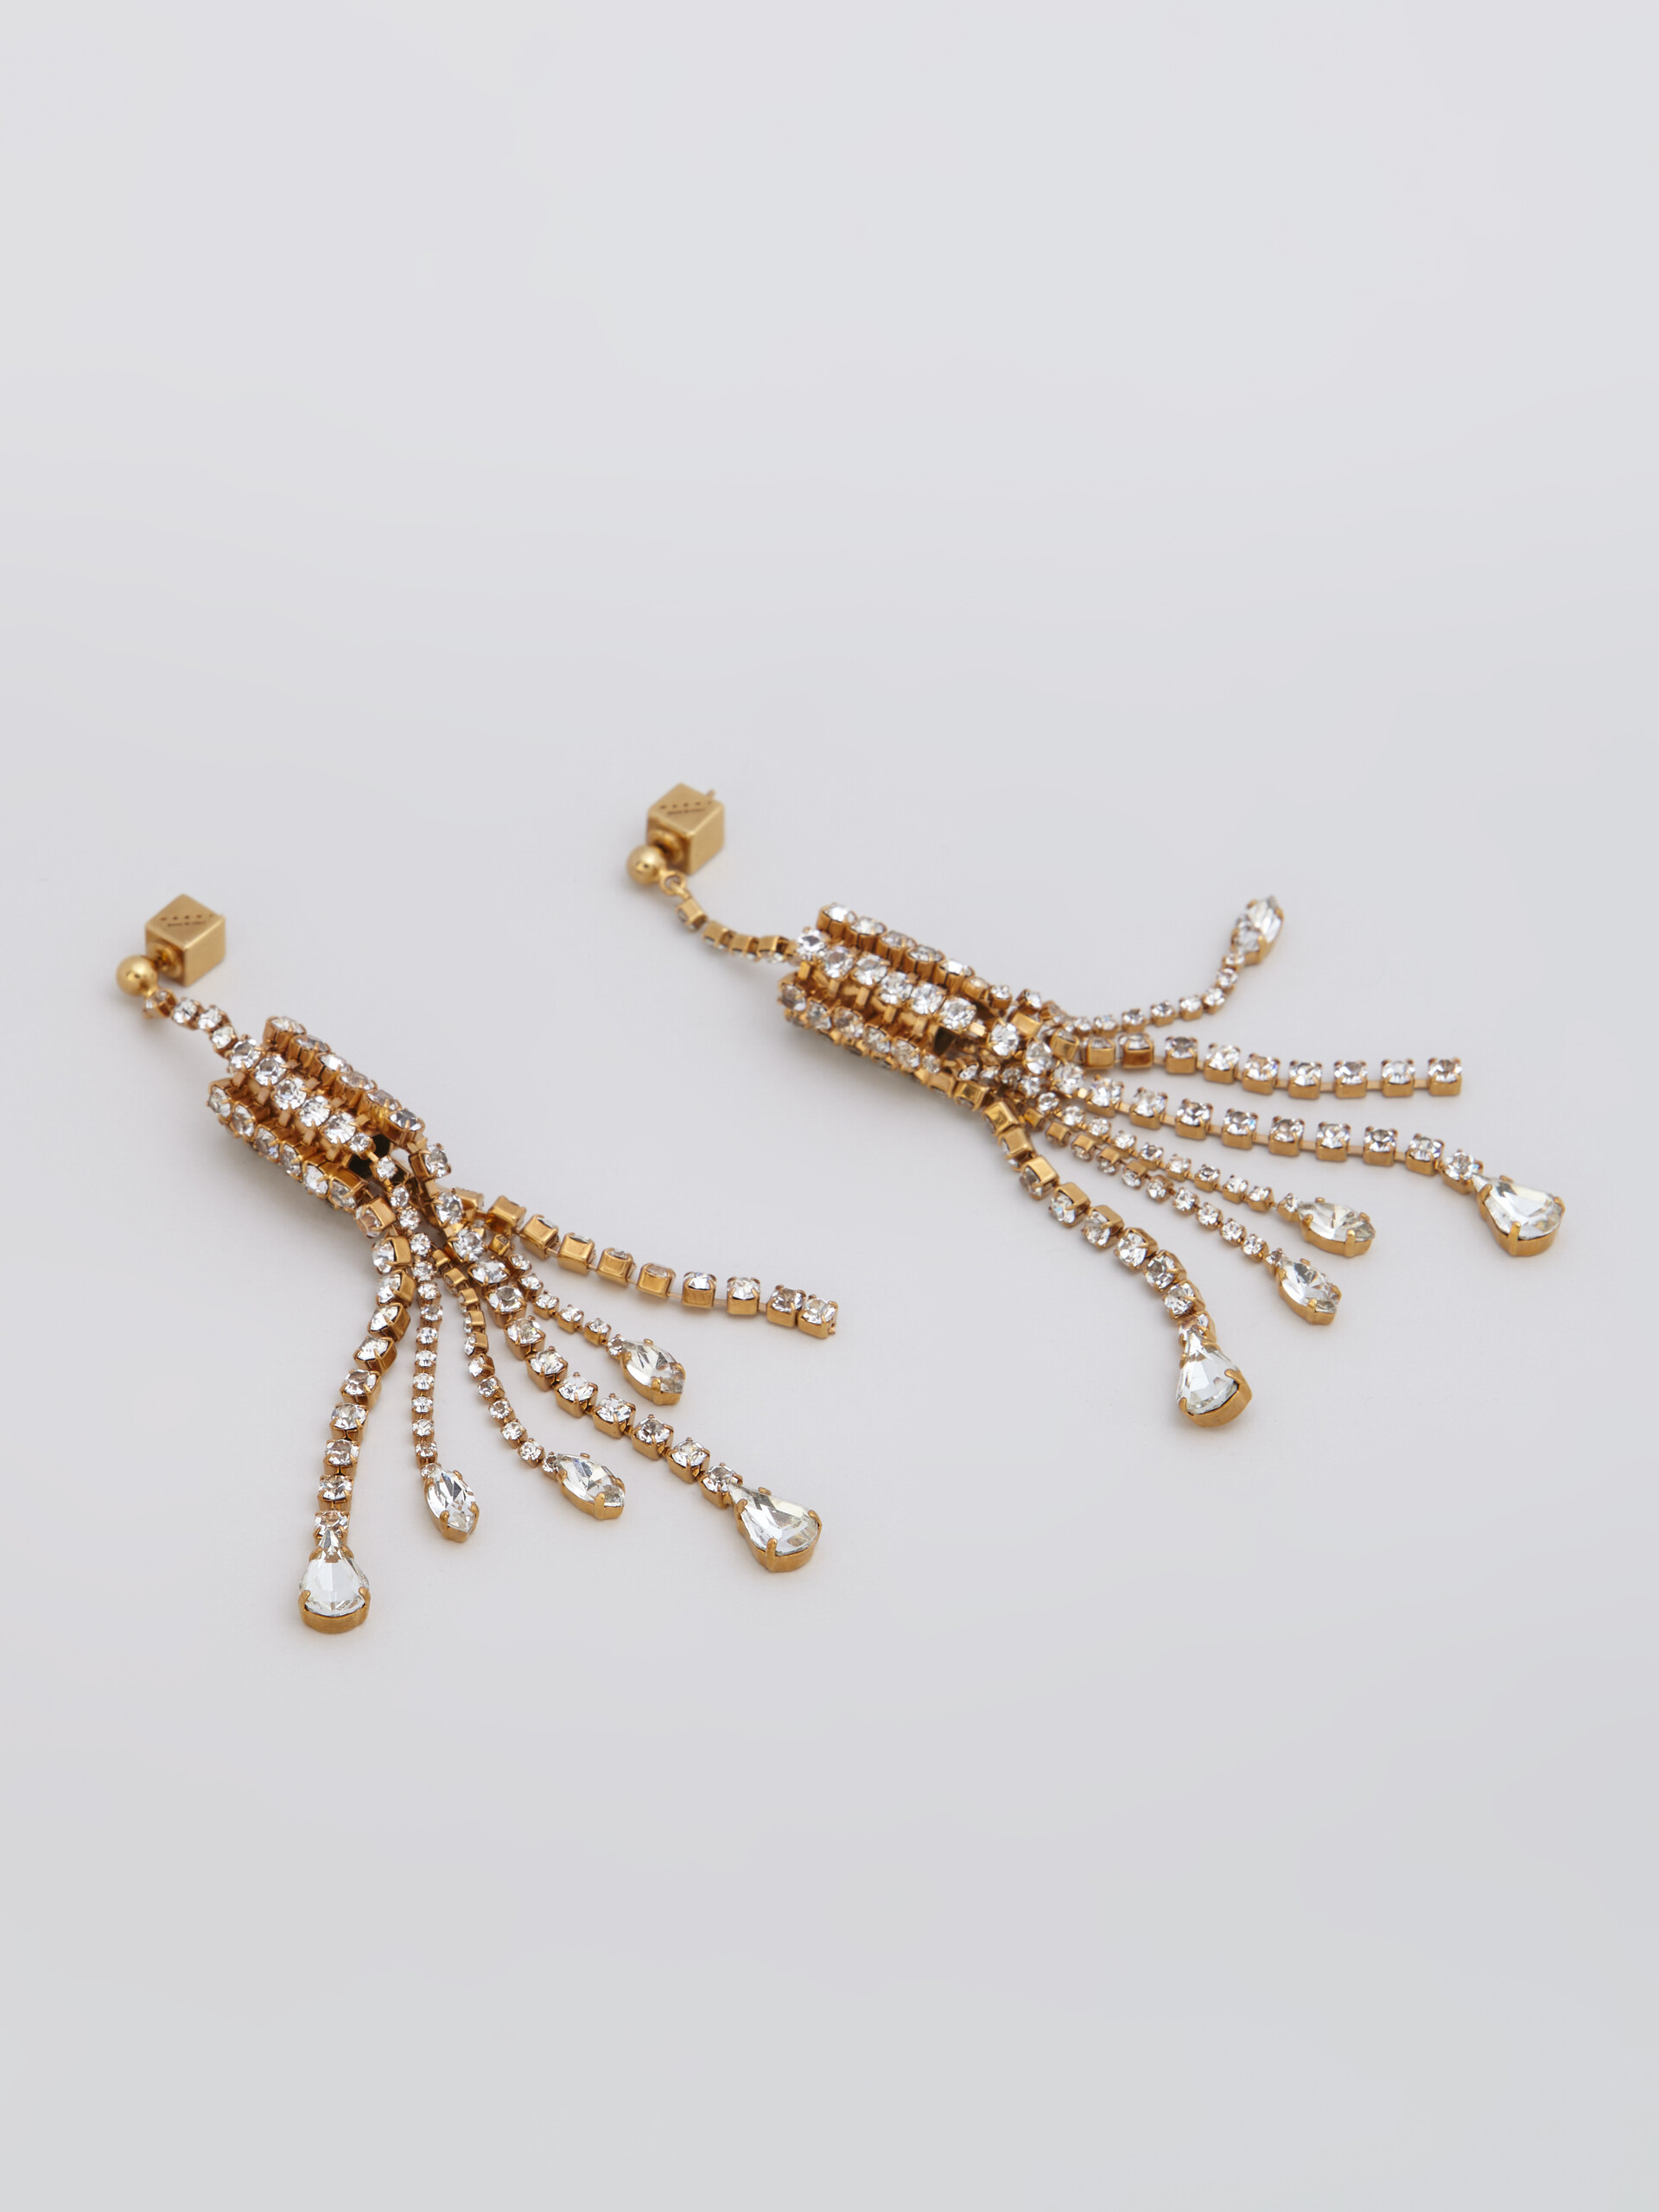 Brass SPARKLE chandelier earrings - Earrings - Image 4